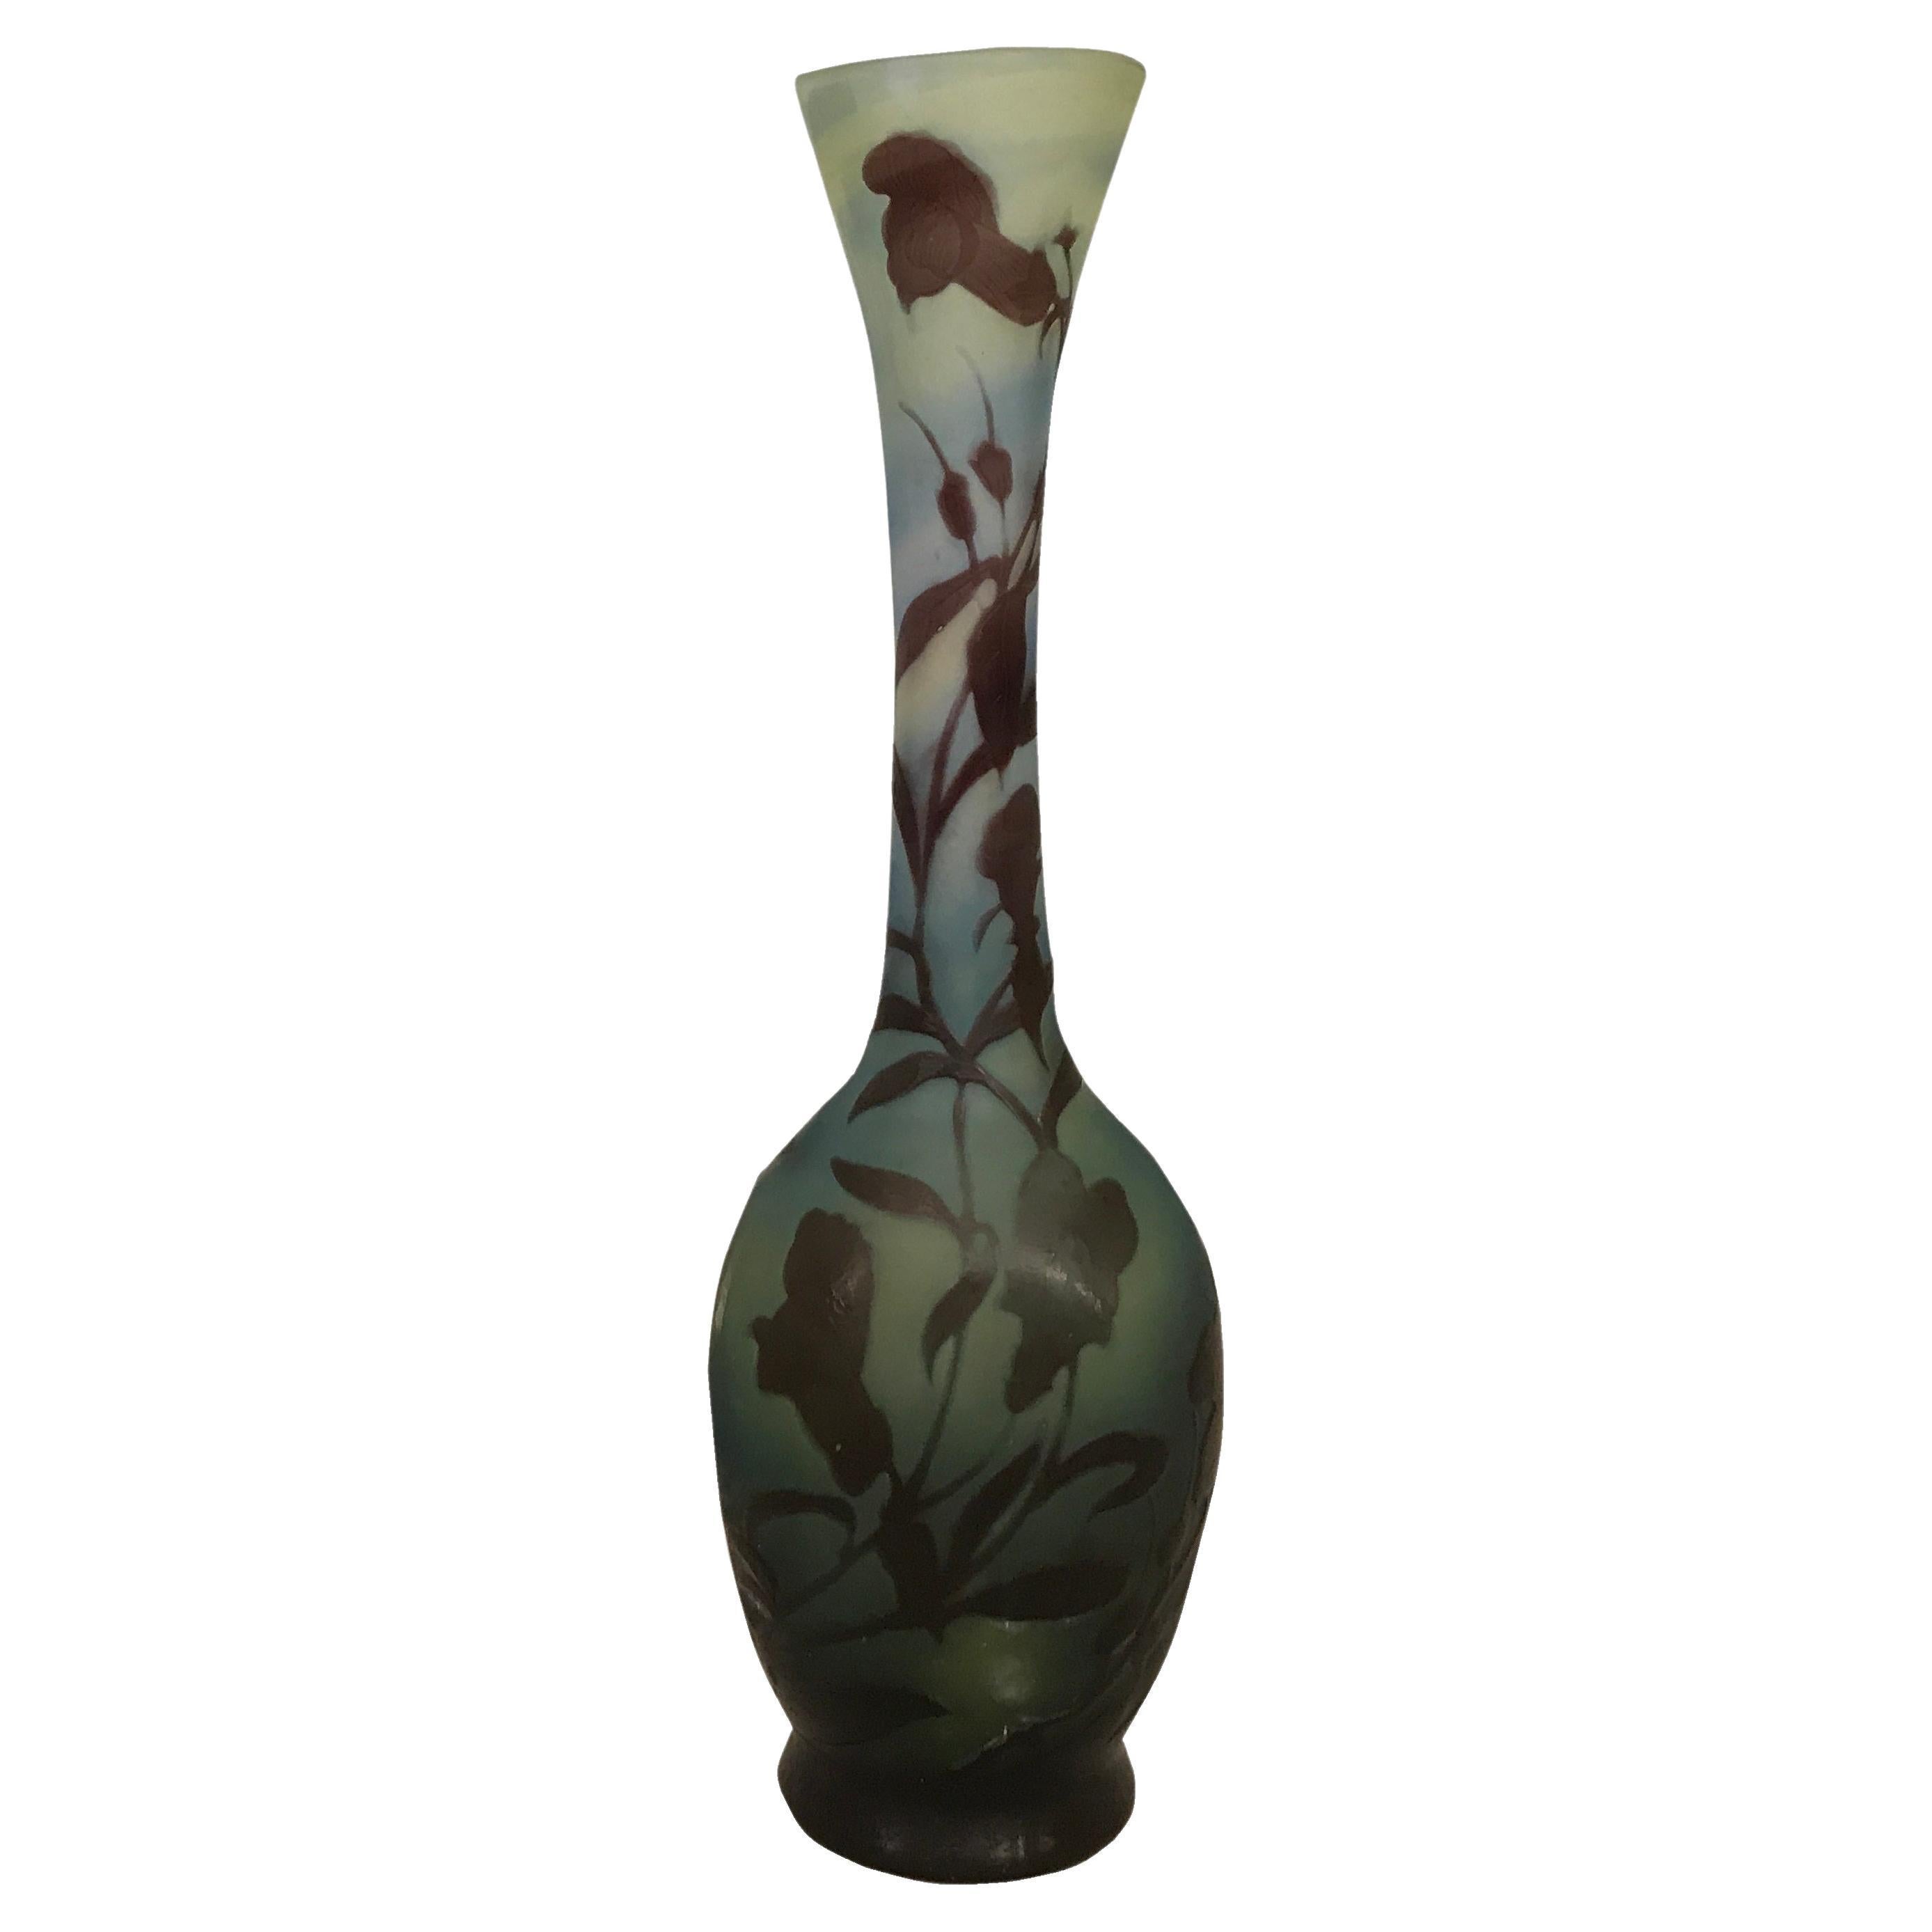  French Vase, Sign: Gallé, Style: Jugendstil, Art Nouveau, Liberty For Sale